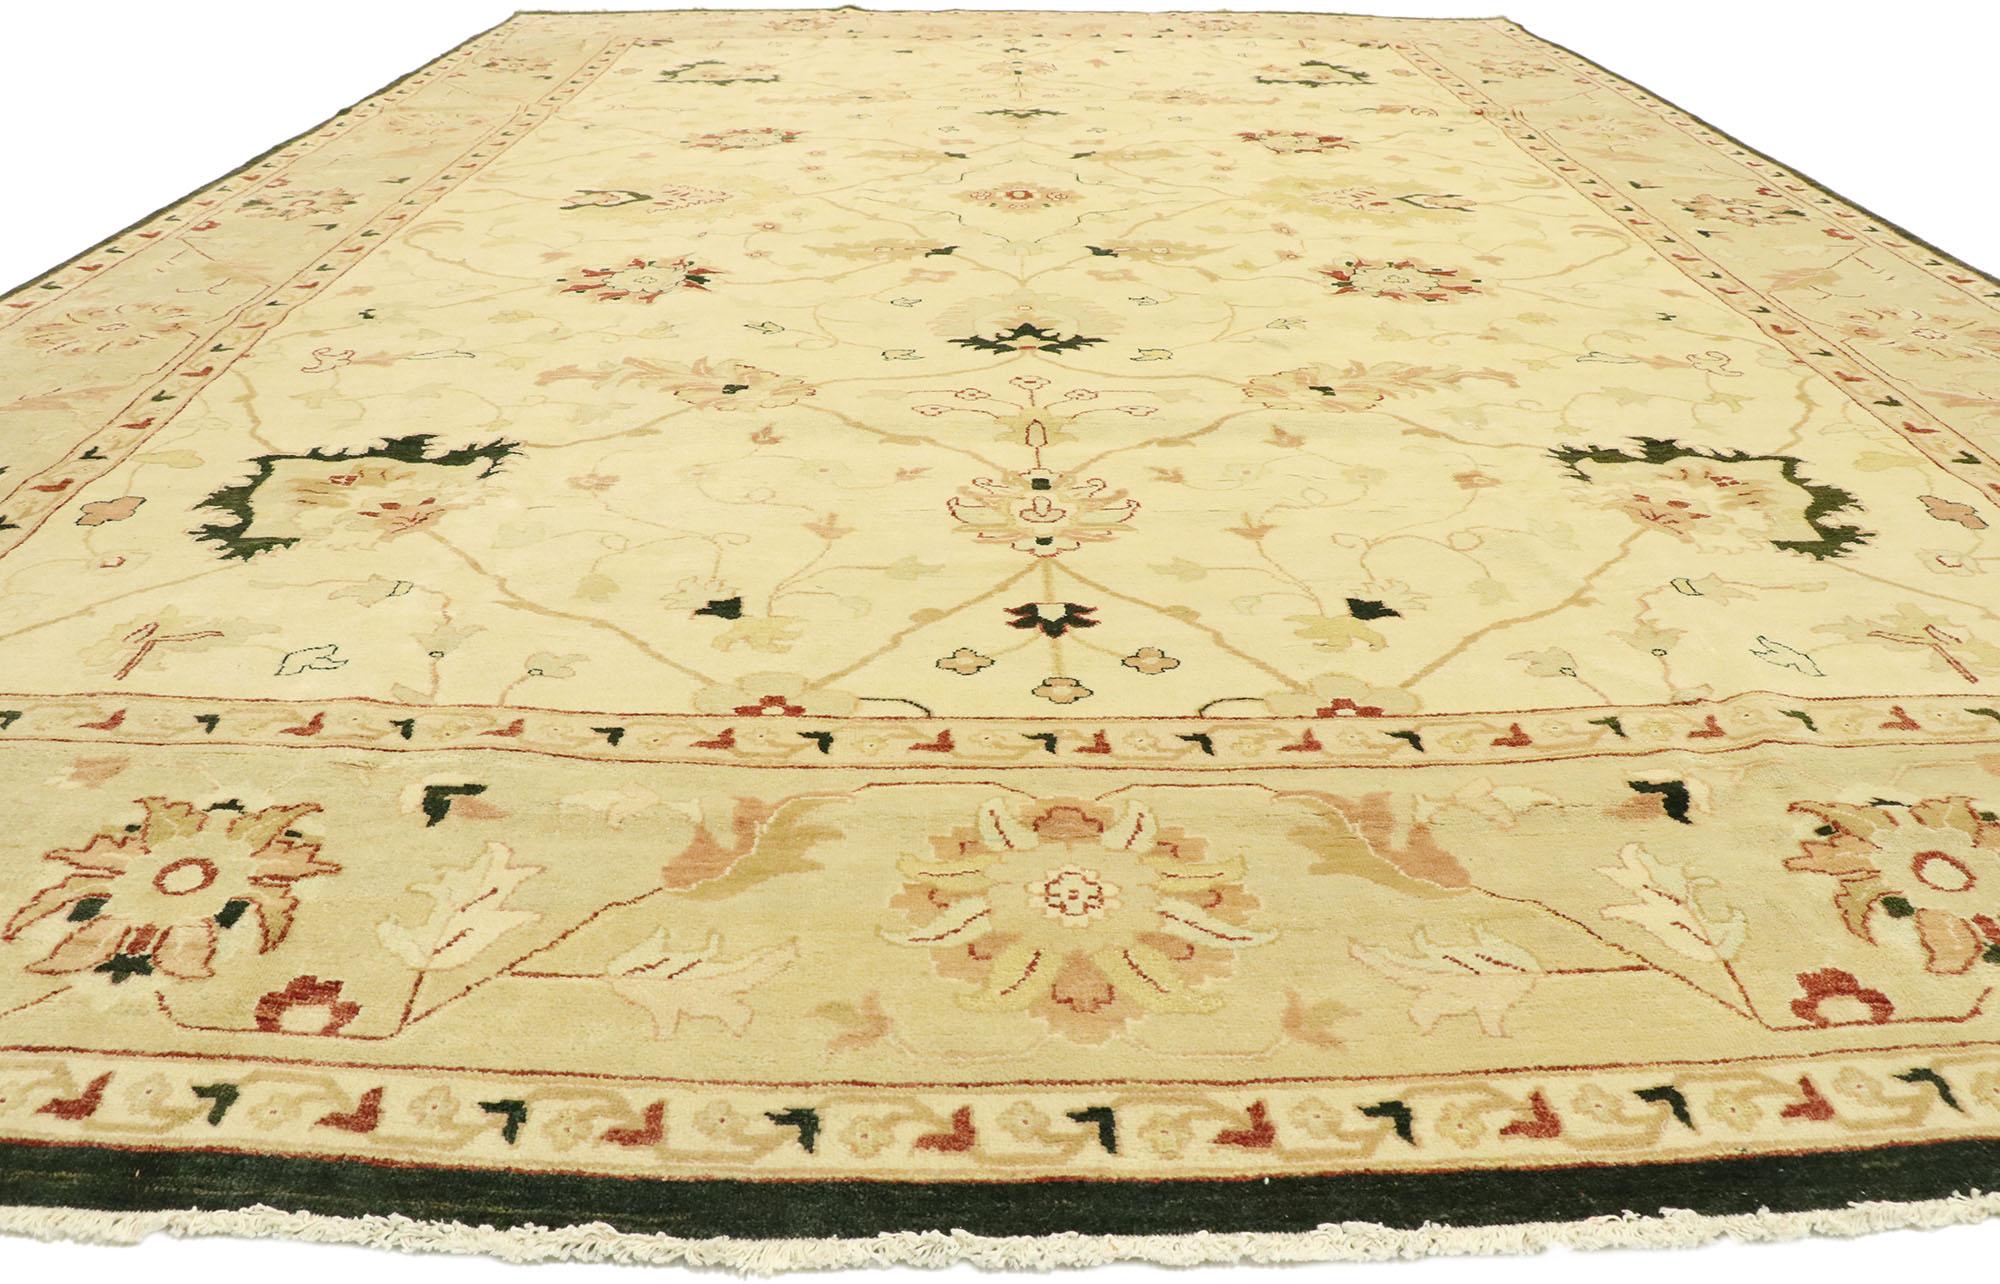 persian rugs